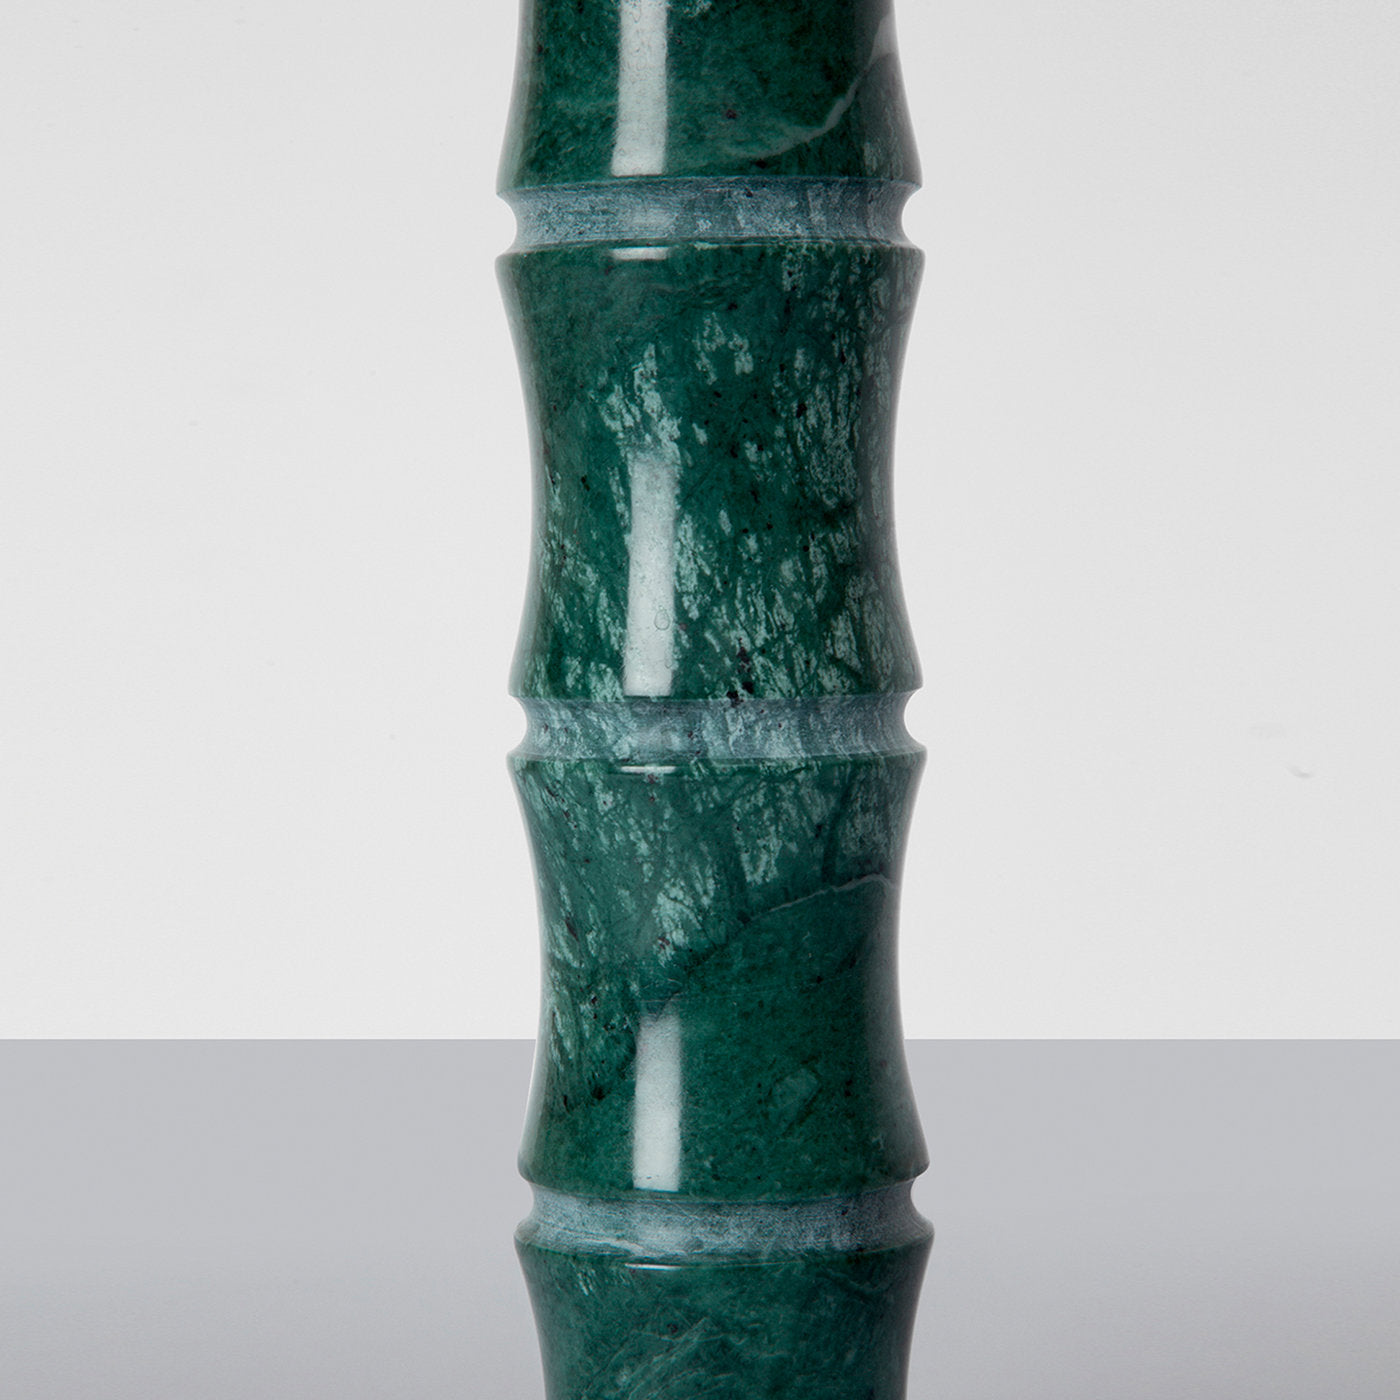 Kadomatsu Large Green Guatemala Vase by Michele Chiossi - Alternative view 2